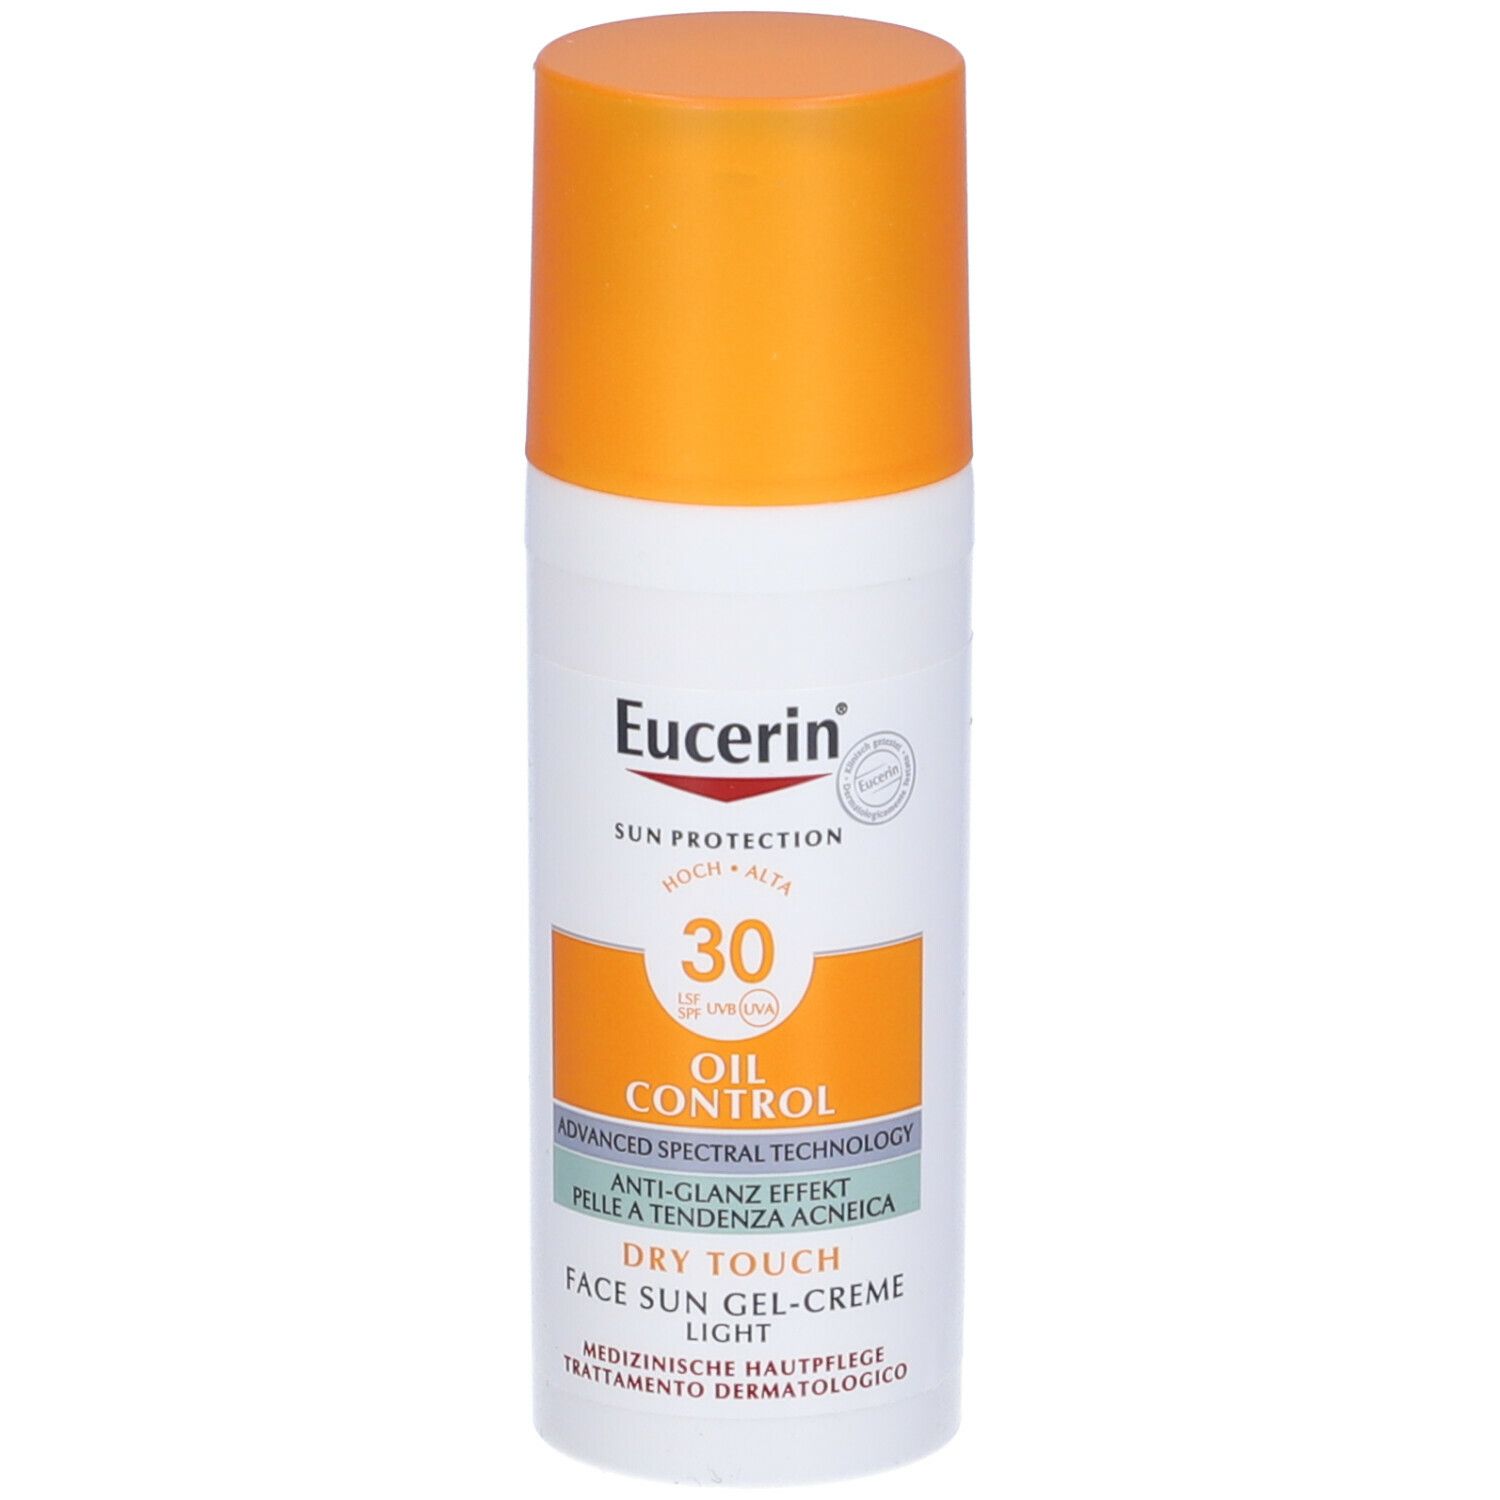 Image of Eucerin® Oil Control Face Sun Gel-Creme LSF 30